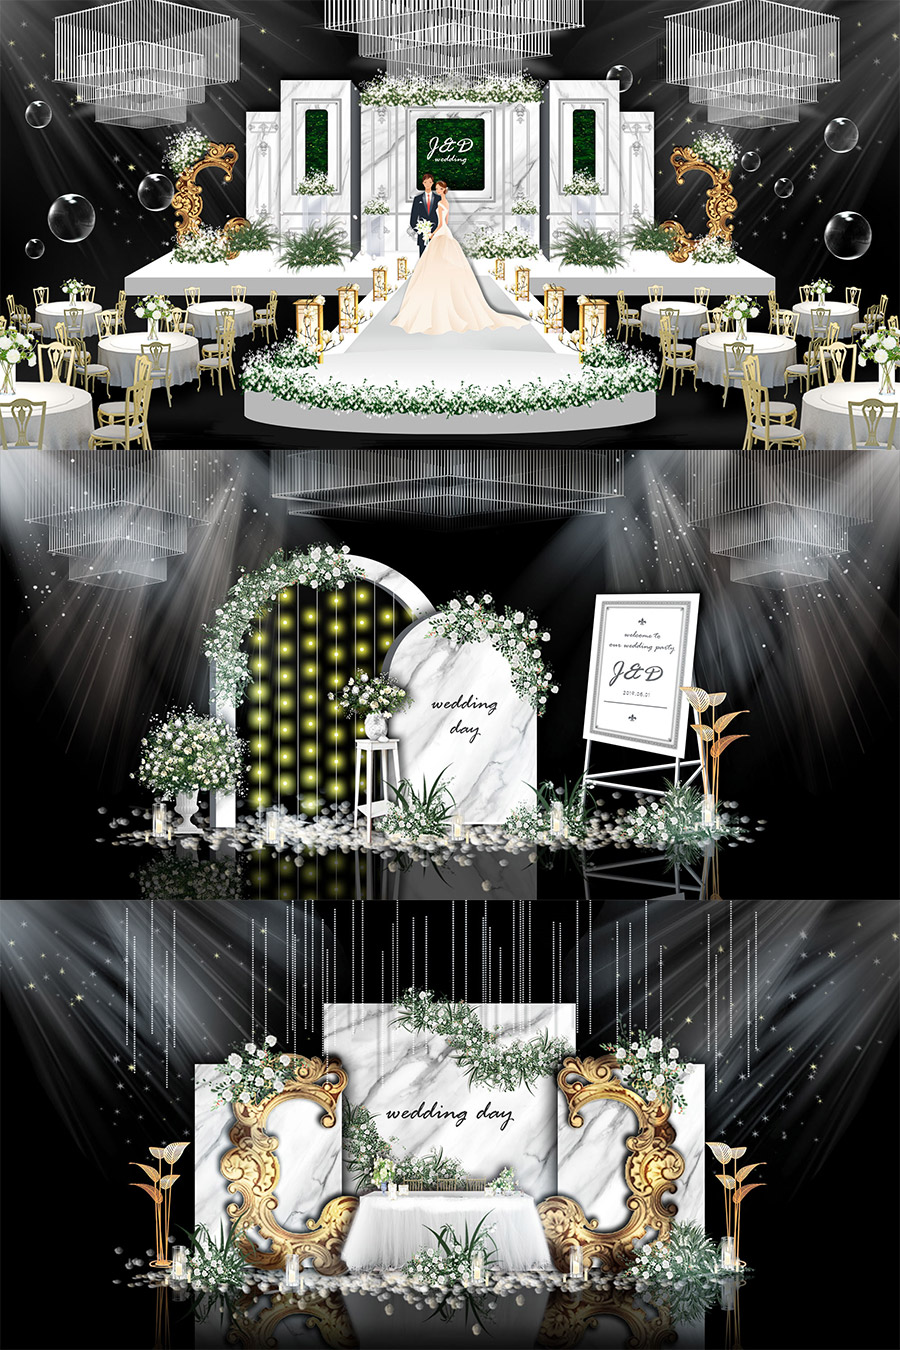 白色现代欧式大理石婚礼舞台签到迎宾区效果图psd模板设计素材